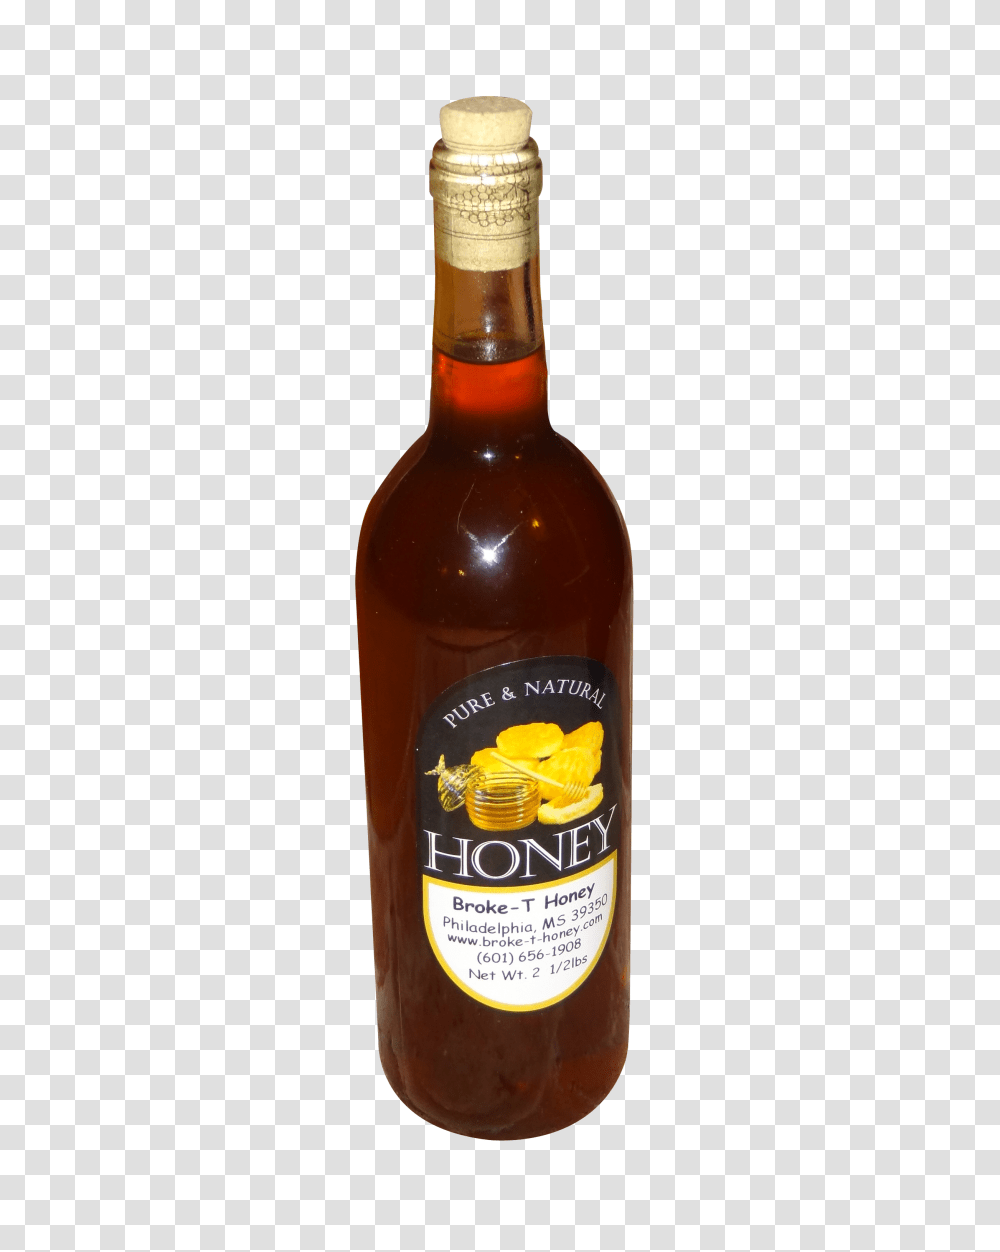 Honey Bottle Image, Food, Beer, Alcohol, Beverage Transparent Png